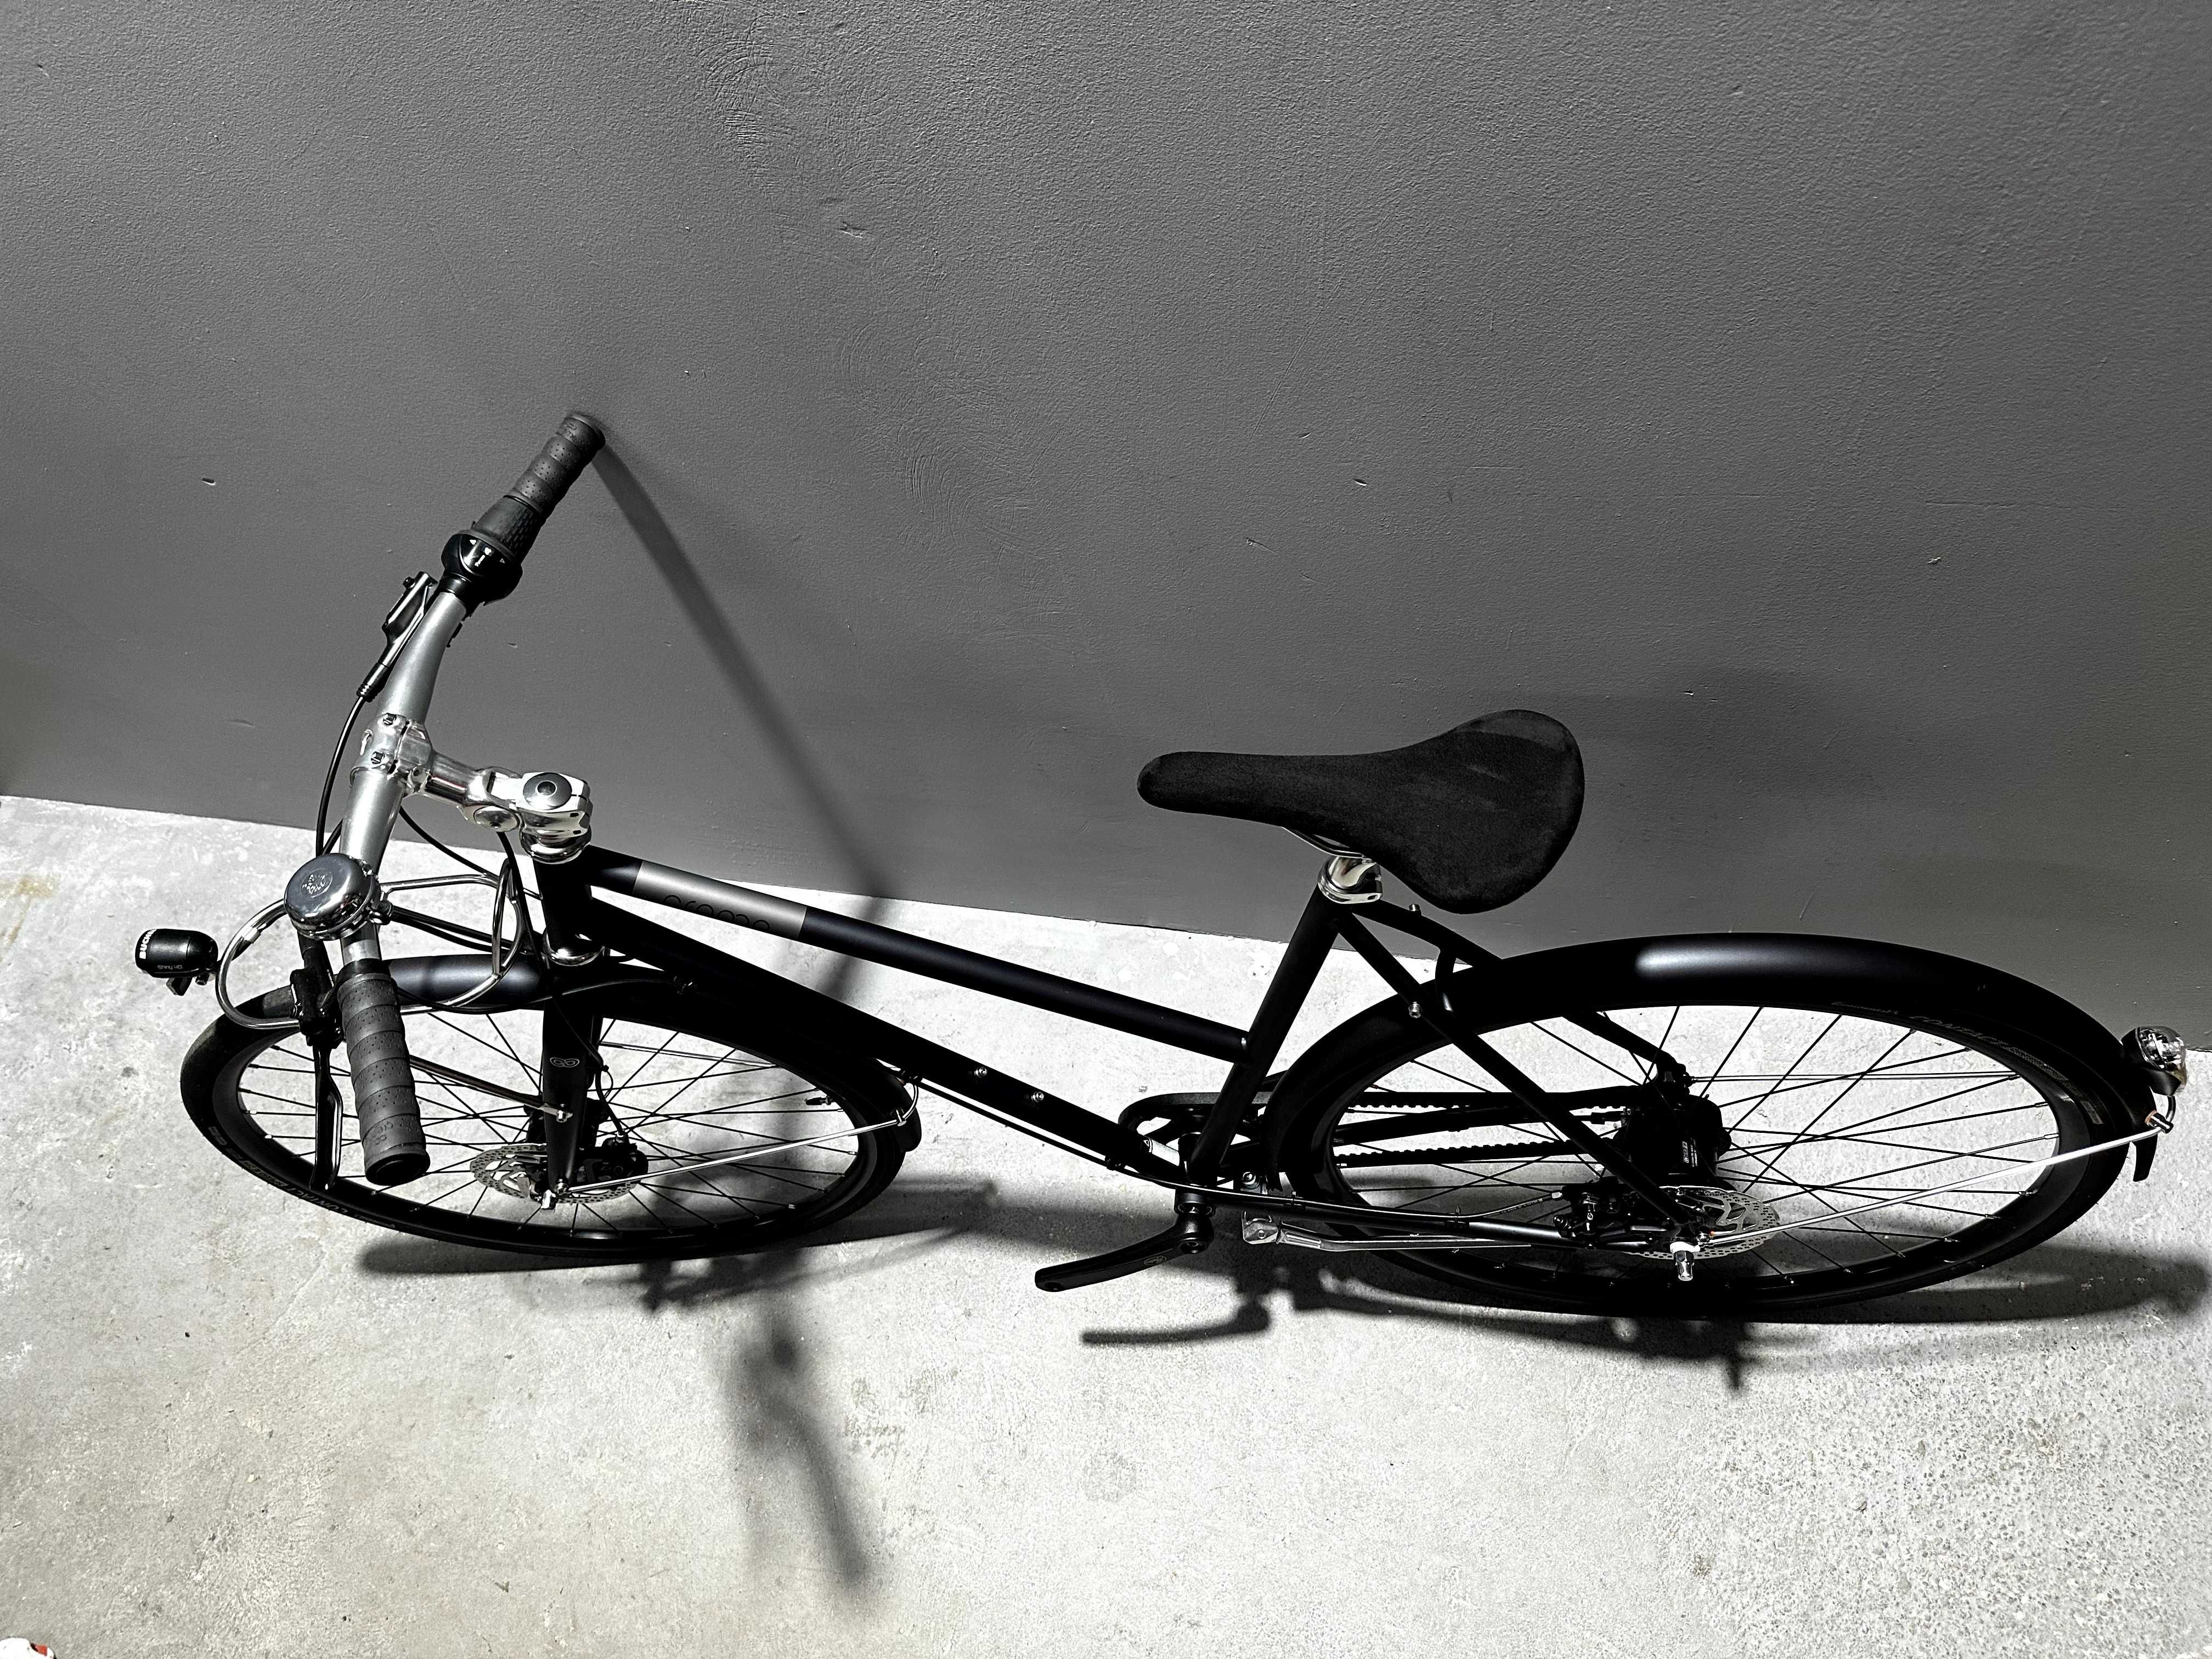 NOWY STYLOWY rower miejski Creme Ristretto Speedster ST r. L z 5999 zł